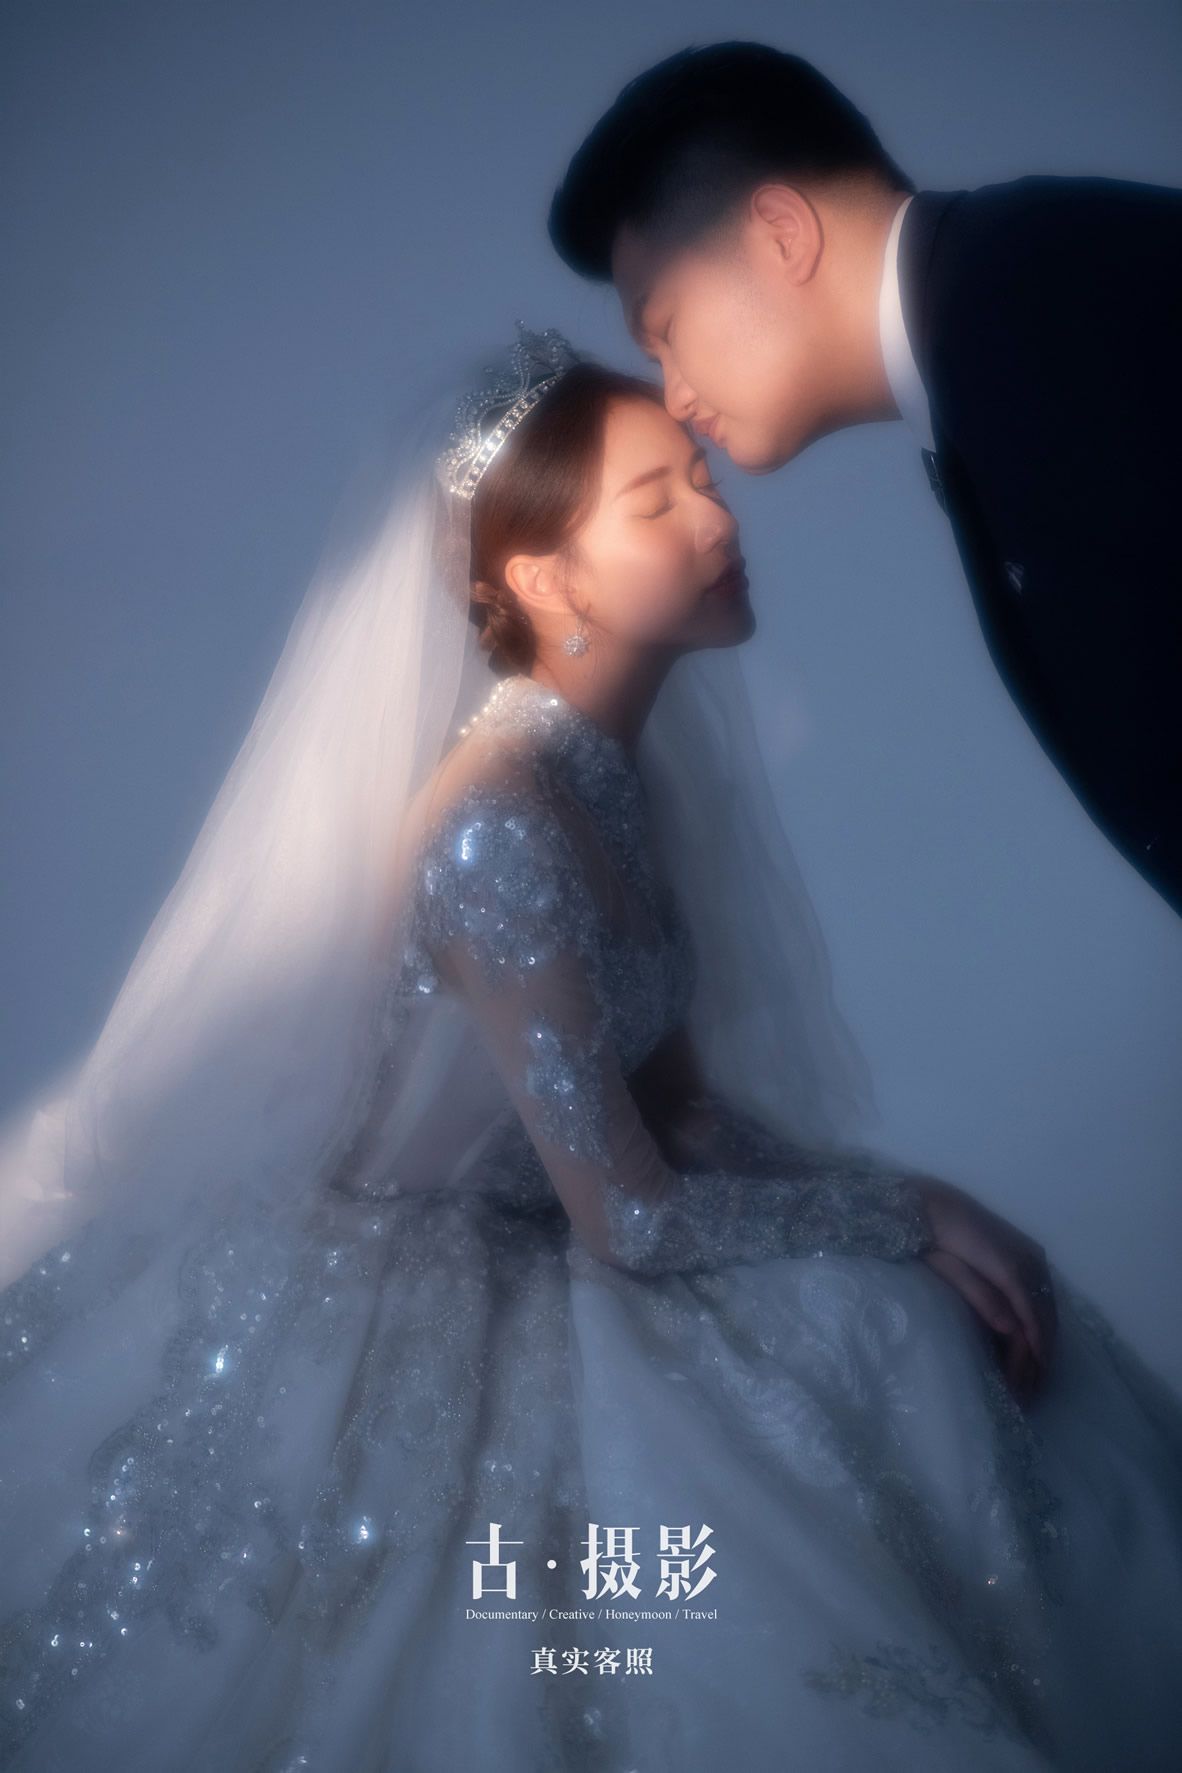 霍先生 林小姐 - 每日客照 - 广州婚纱摄影-广州古摄影官网